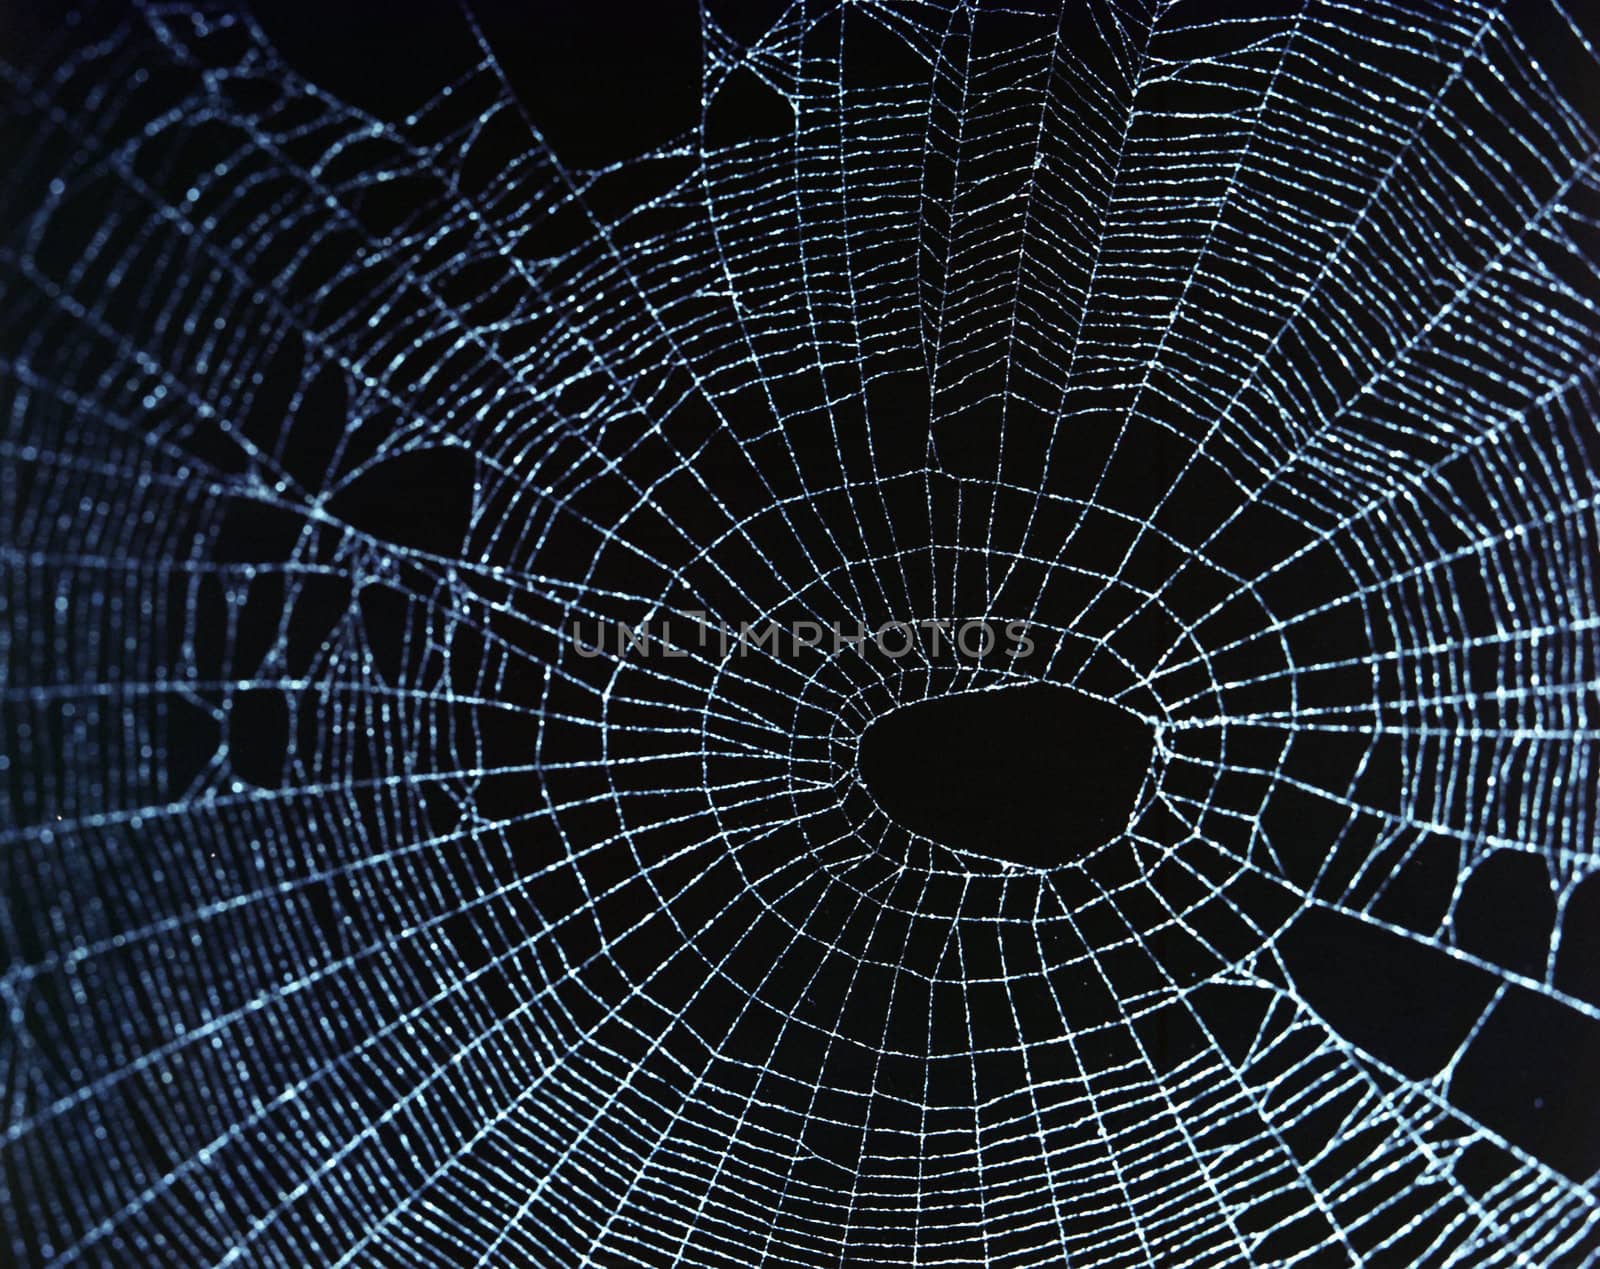 Spider Web by DirkWestphal